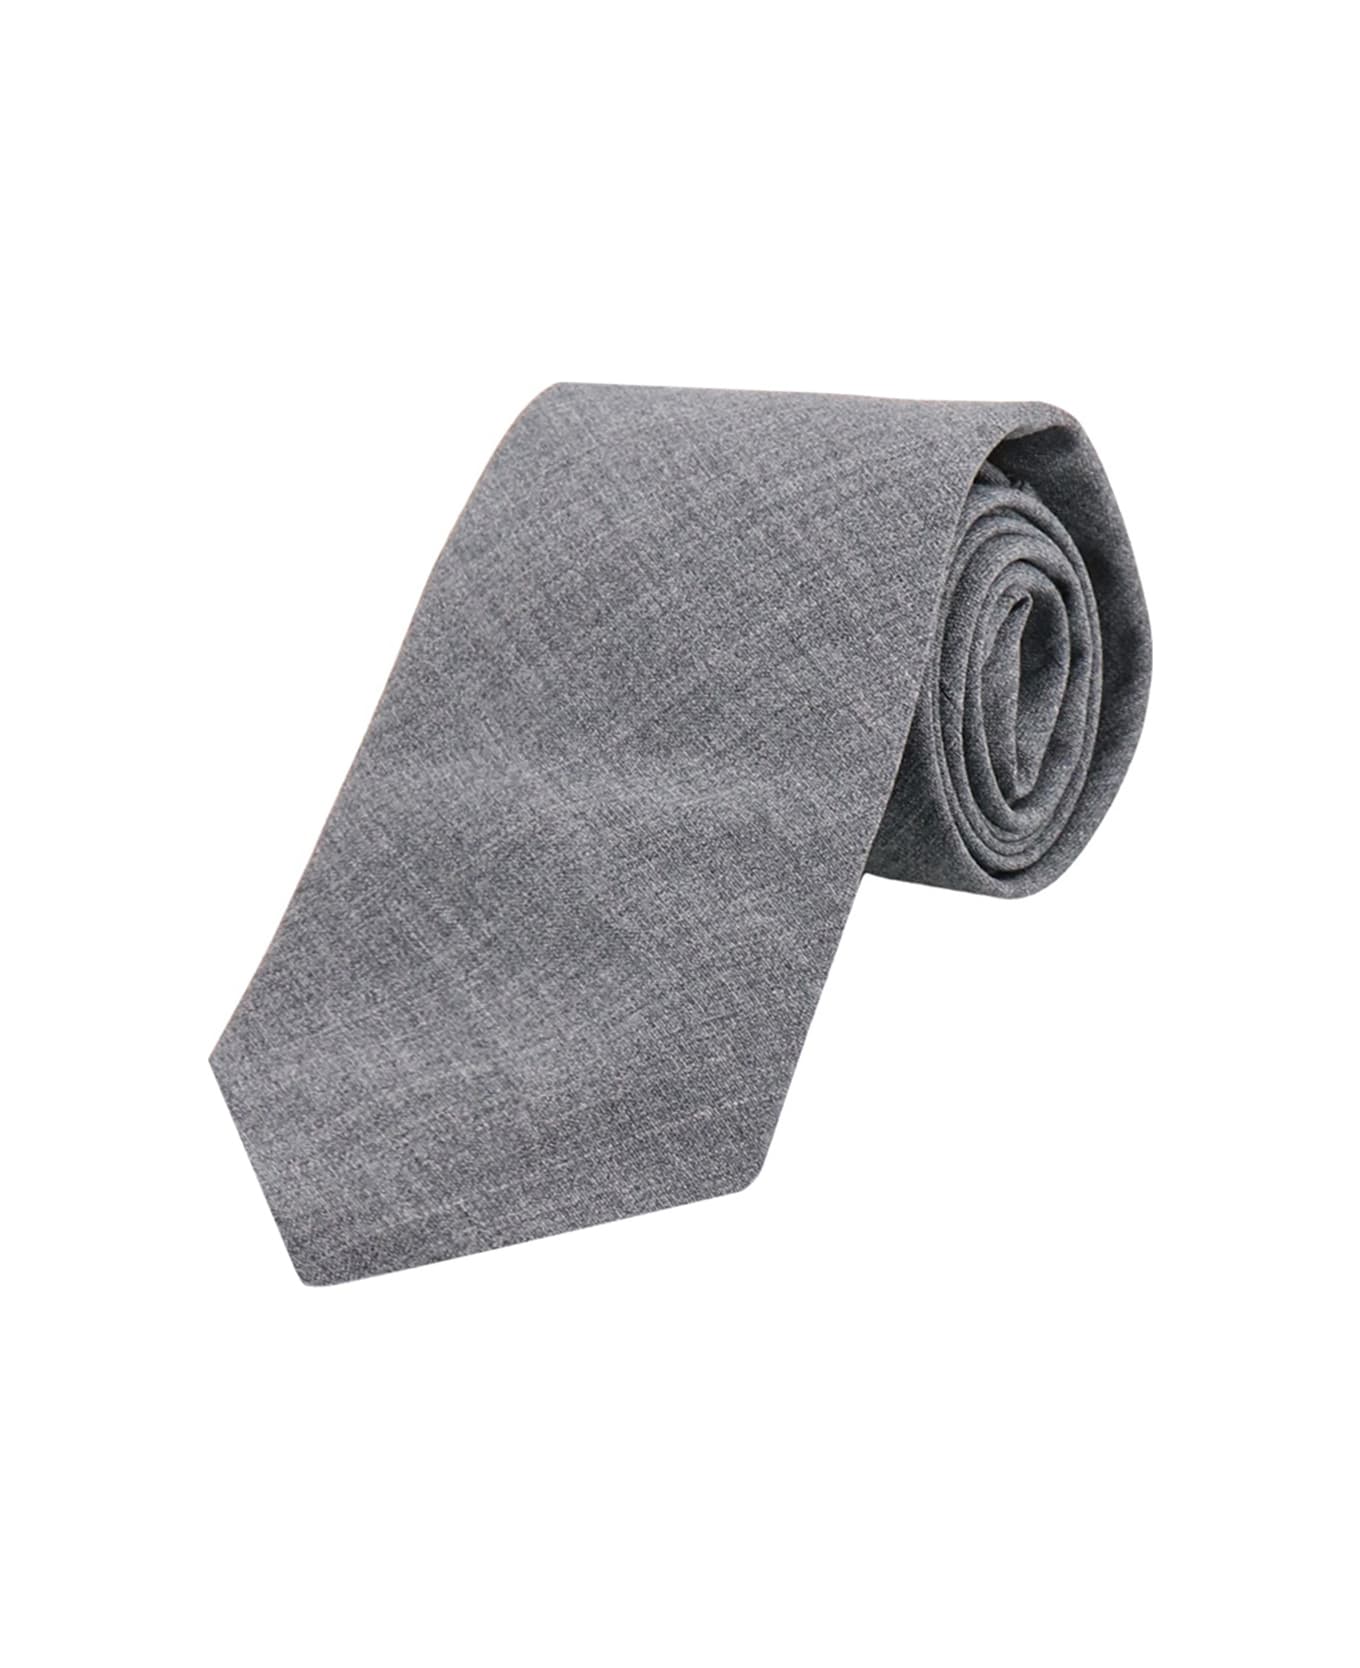 Brunello Cucinelli Wool Tie - Grey